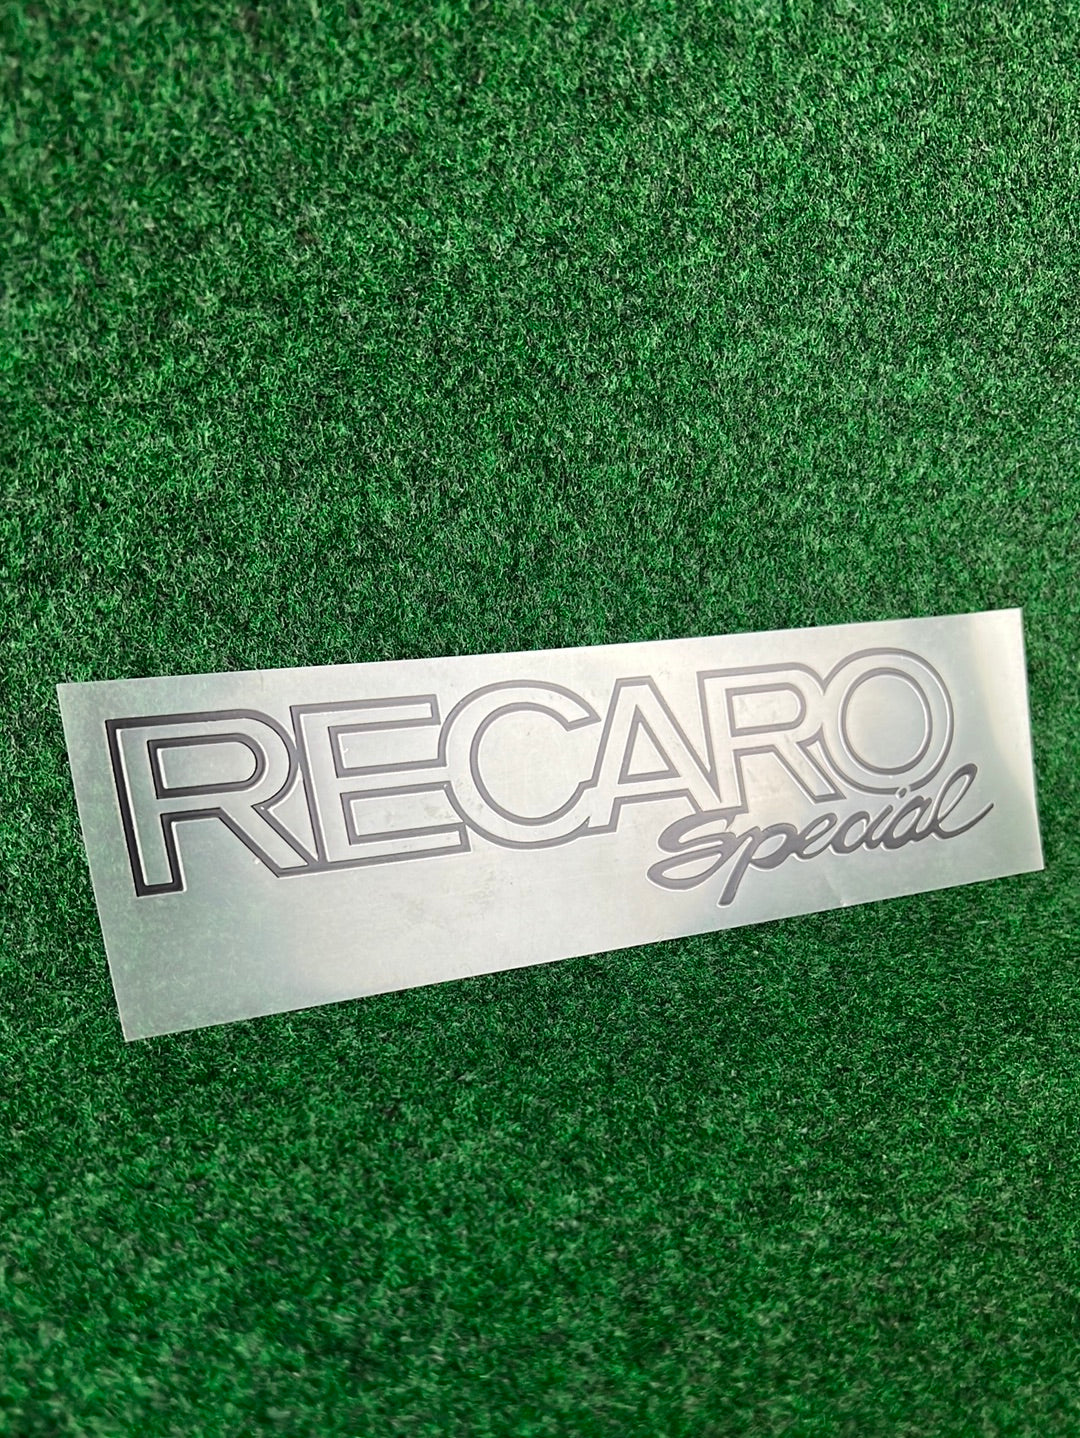 RECARO Large Logo Sticker & RECARO Special Decal Set